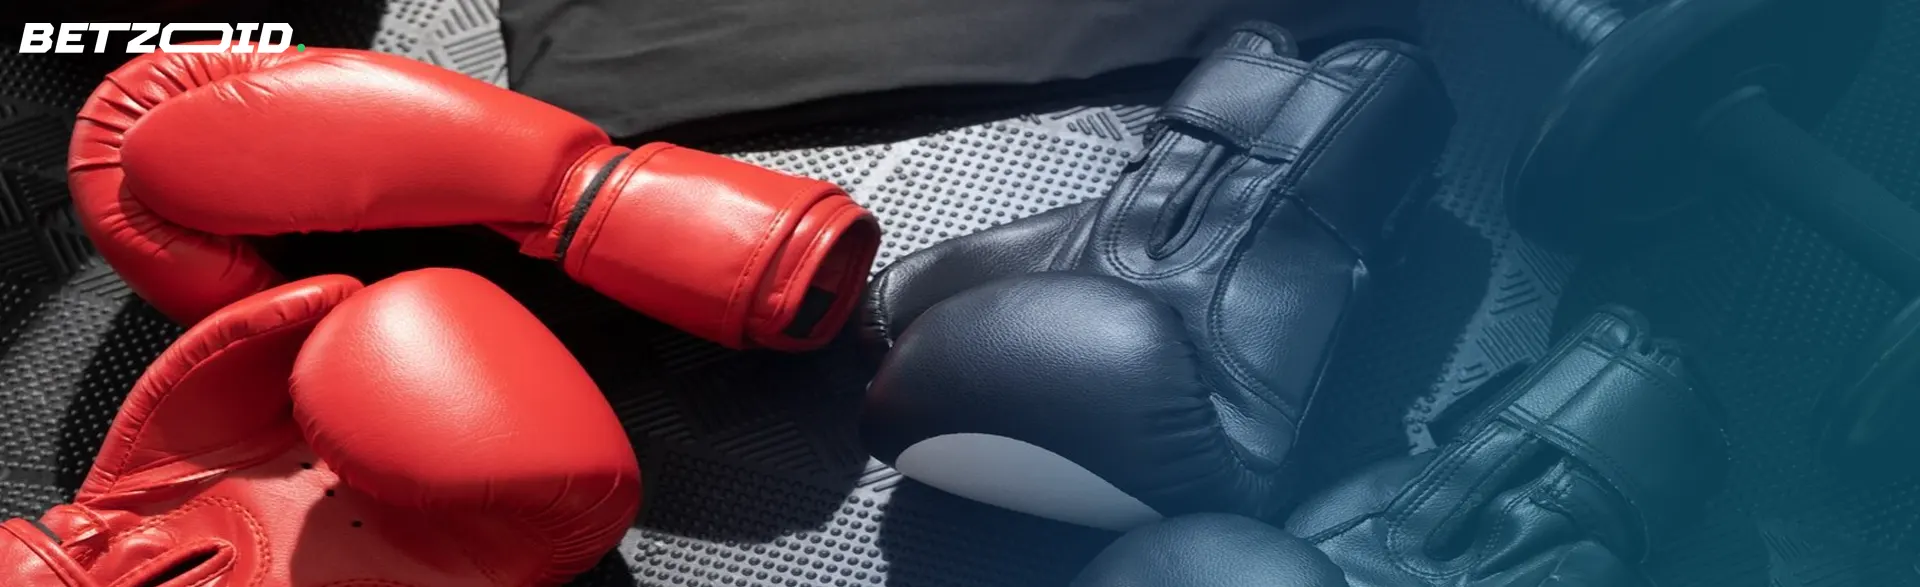 Boxeador con guante rojo lanzando un golpe, imagen para casas de apuestas de boxeo.